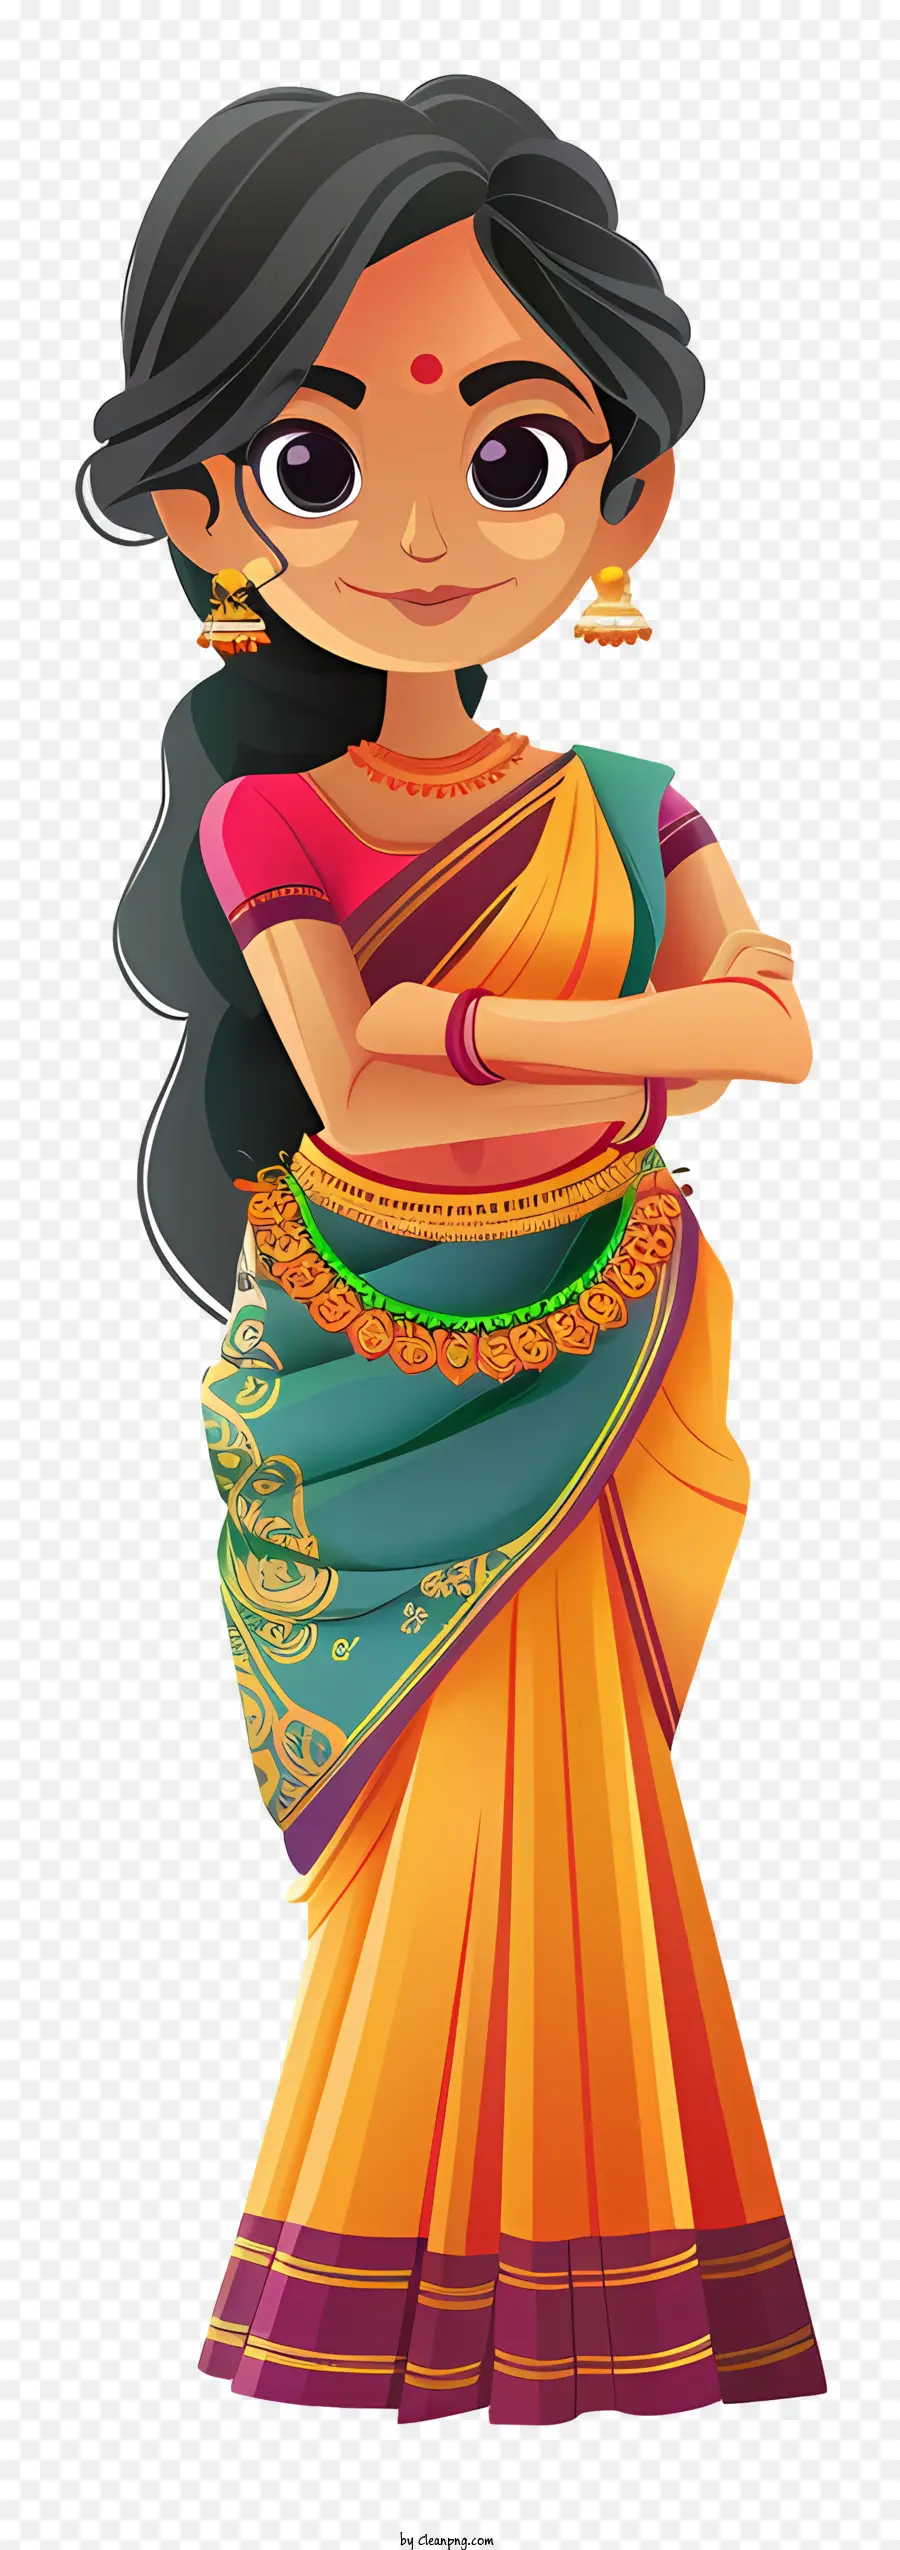 Cartoon indiano Cartoon tradizionale abbigliamento indiano Sari Abbigliamento tradizionale di moda indiana - Ragazza indiana tradizionale in sari colorato